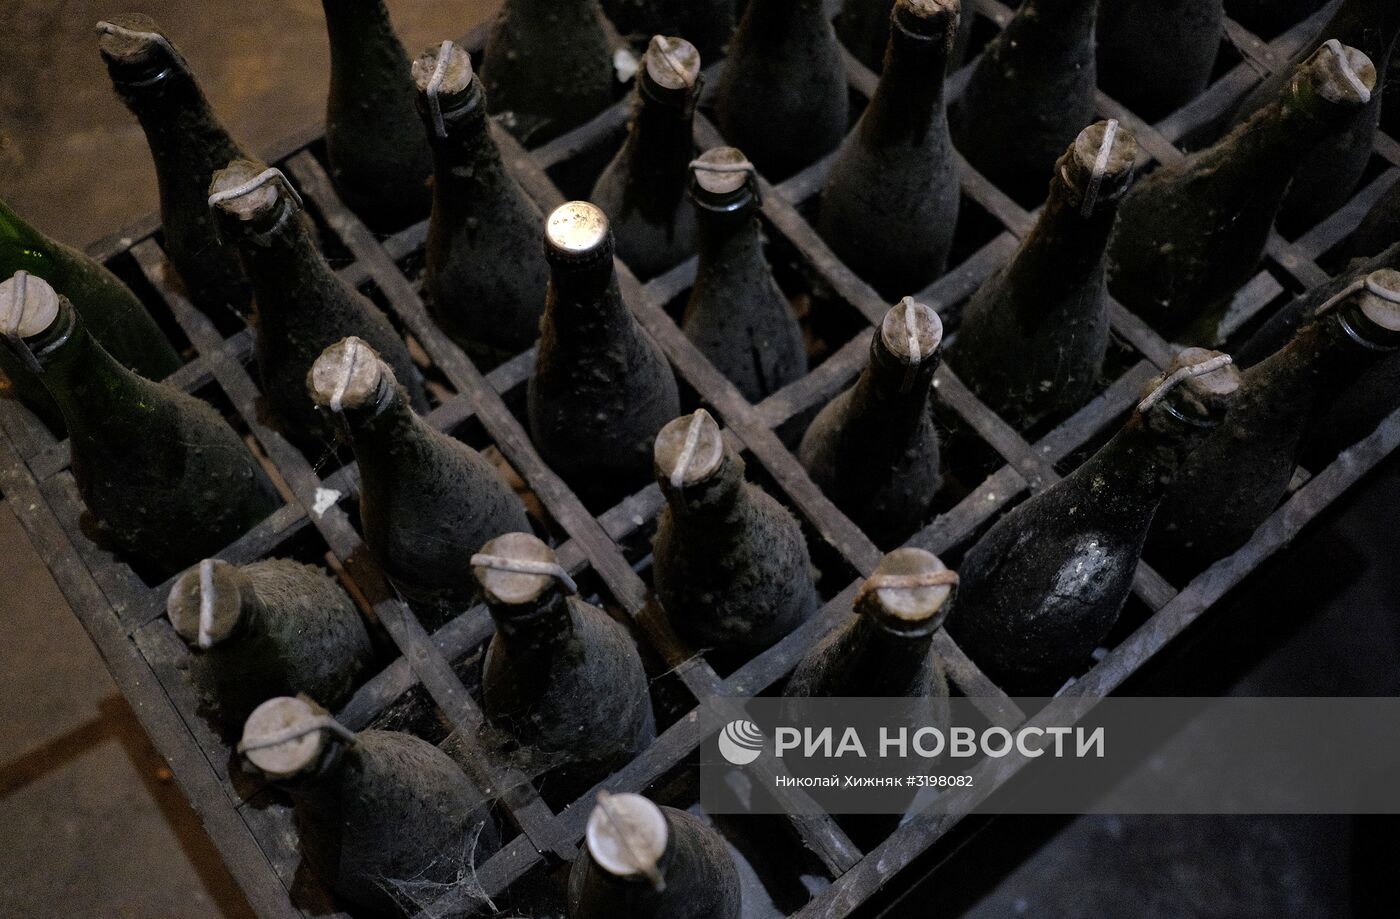 Центр винного туризма "Абрау-Дюрсо" в Краснодарском крае